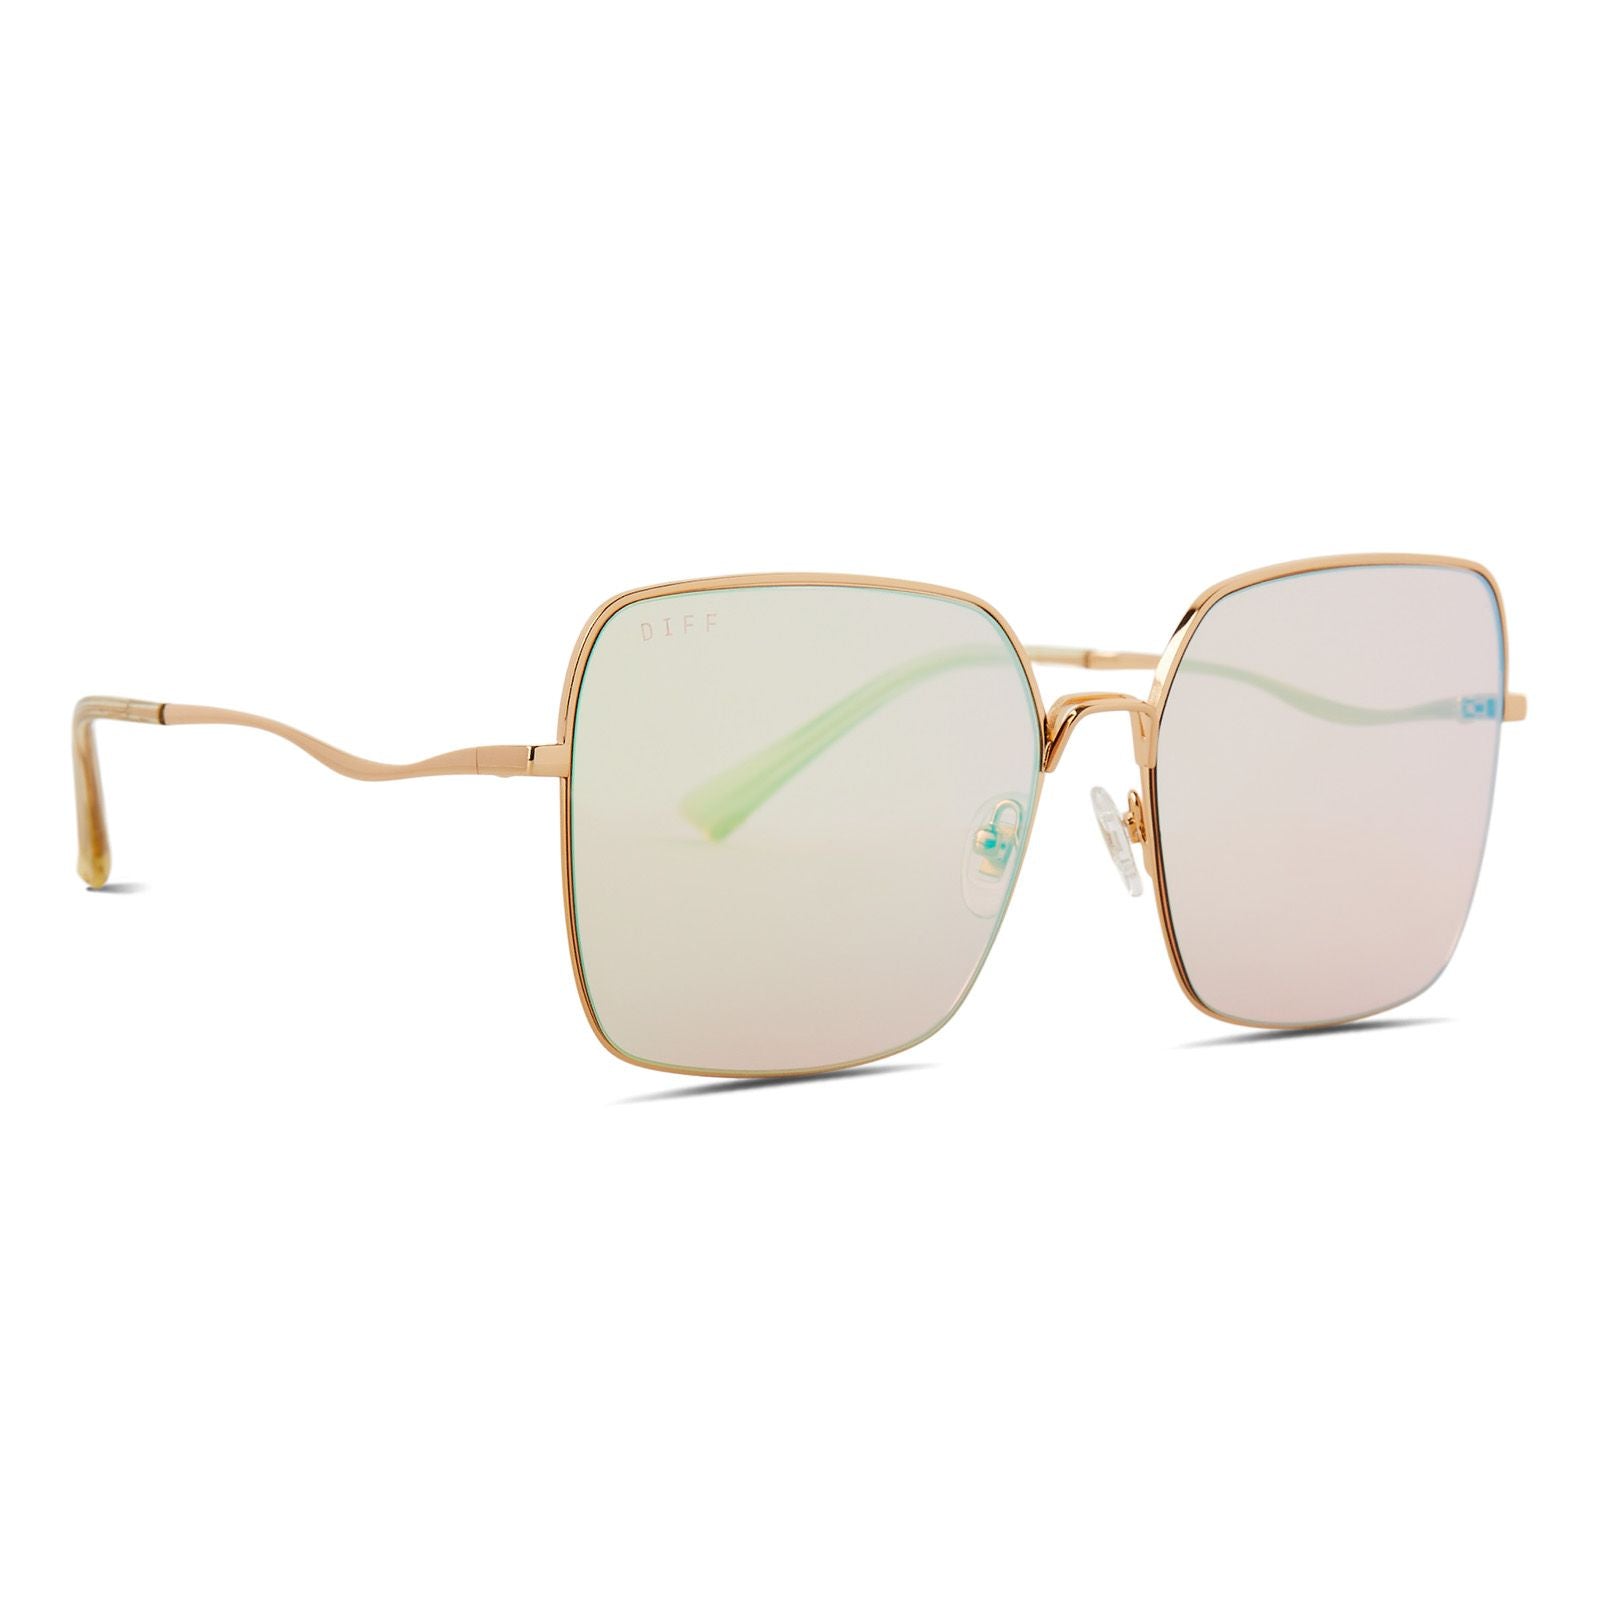 DIFF | Clara Gold + Coral Mirror Sunglasses